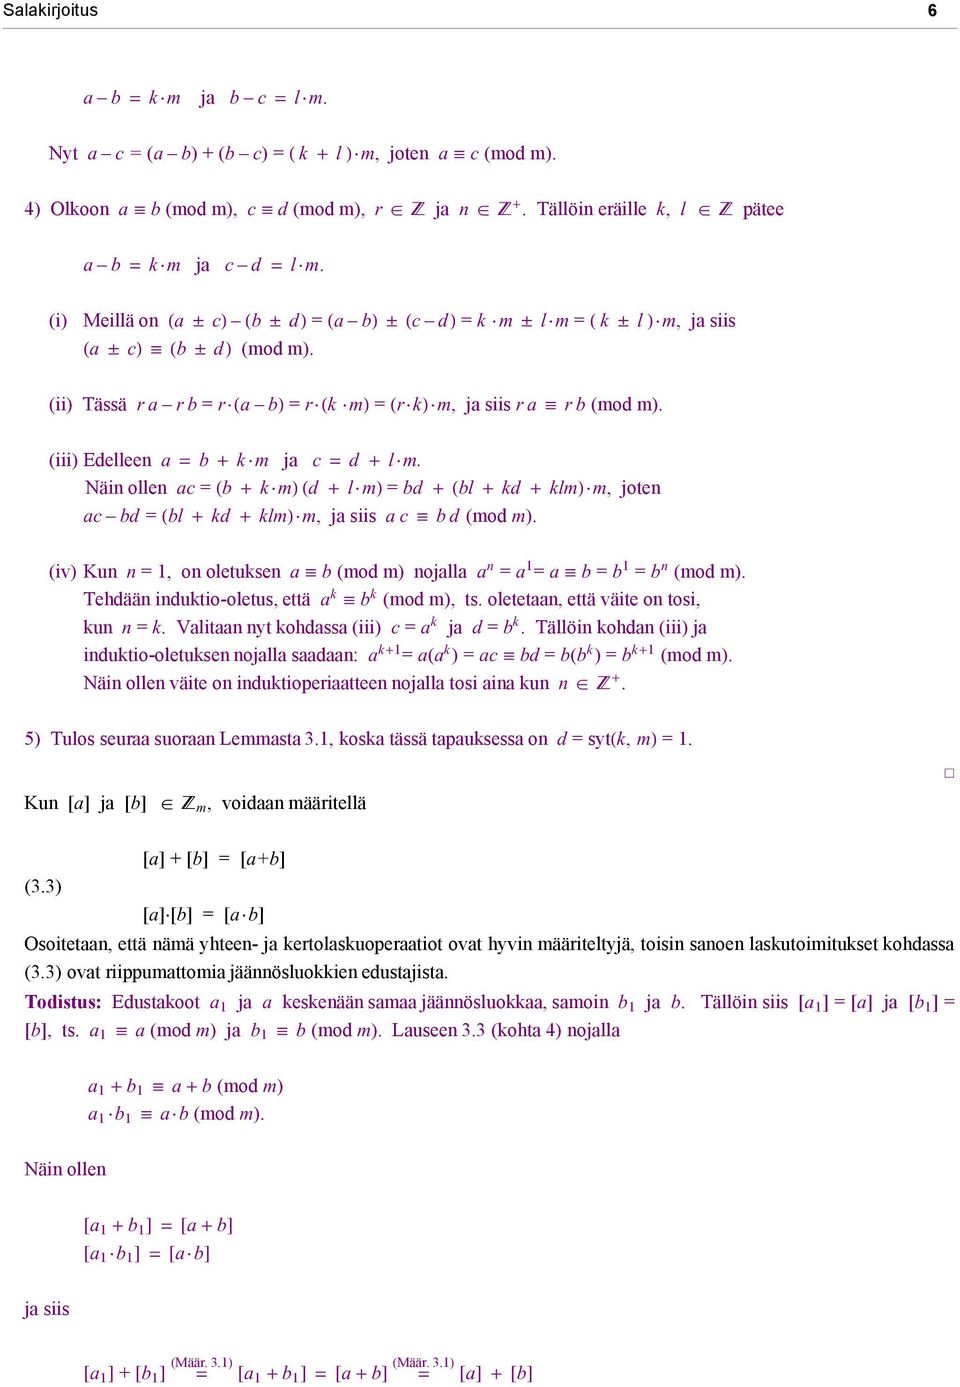 (iii) Edelleen a = b + k m ja c = d + l m. Näin ollen ac = (b + k m) (d + l m) = bd + (bl + kd + klm) m, joten ac bd = (bl + kd + klm) m, ja siis a c b d (mod m).